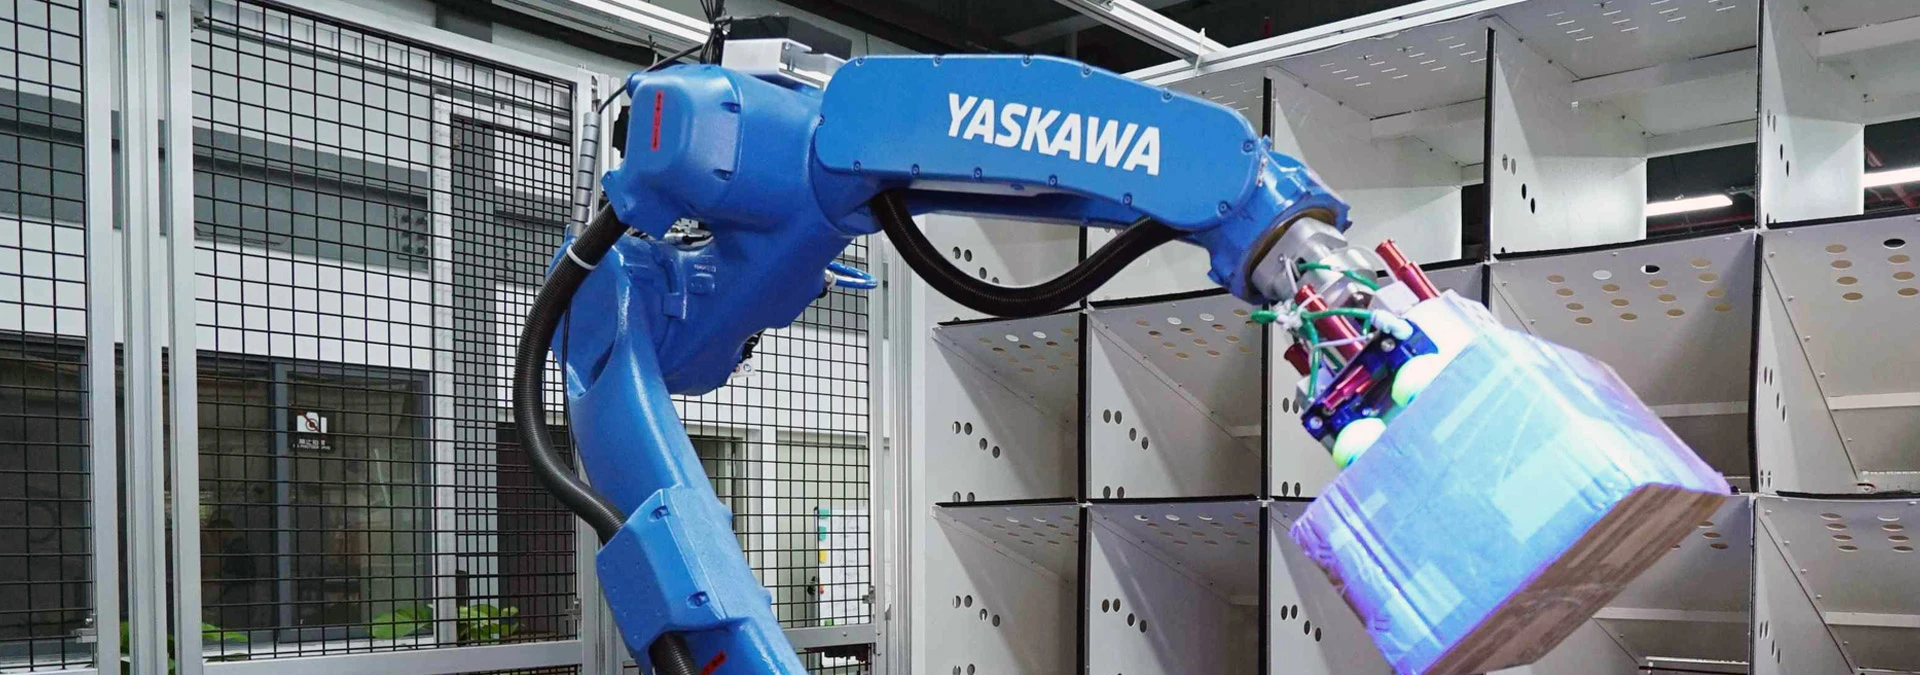 Robot Yaskawa